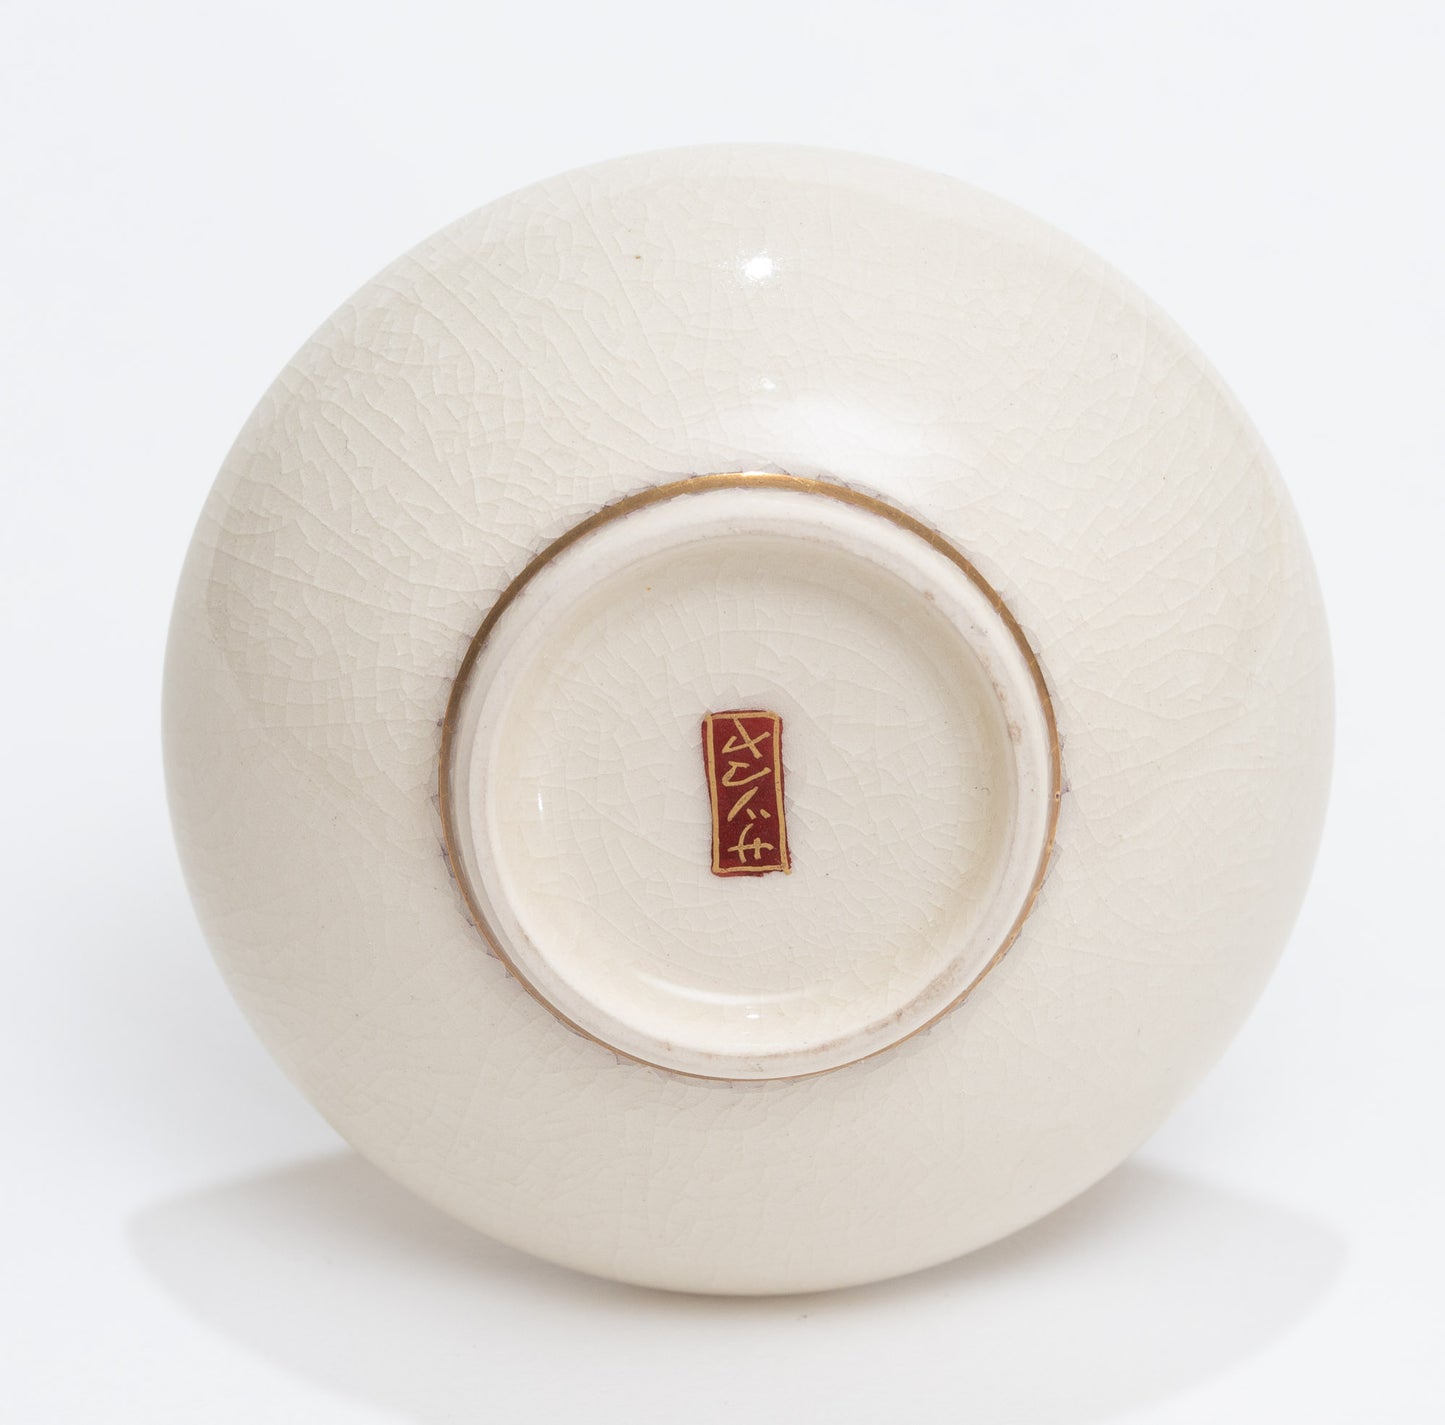 Antique Japanese Satsuma Ware Pottery Mini Vase - Hand Painted Bamboo c1900 (3114)